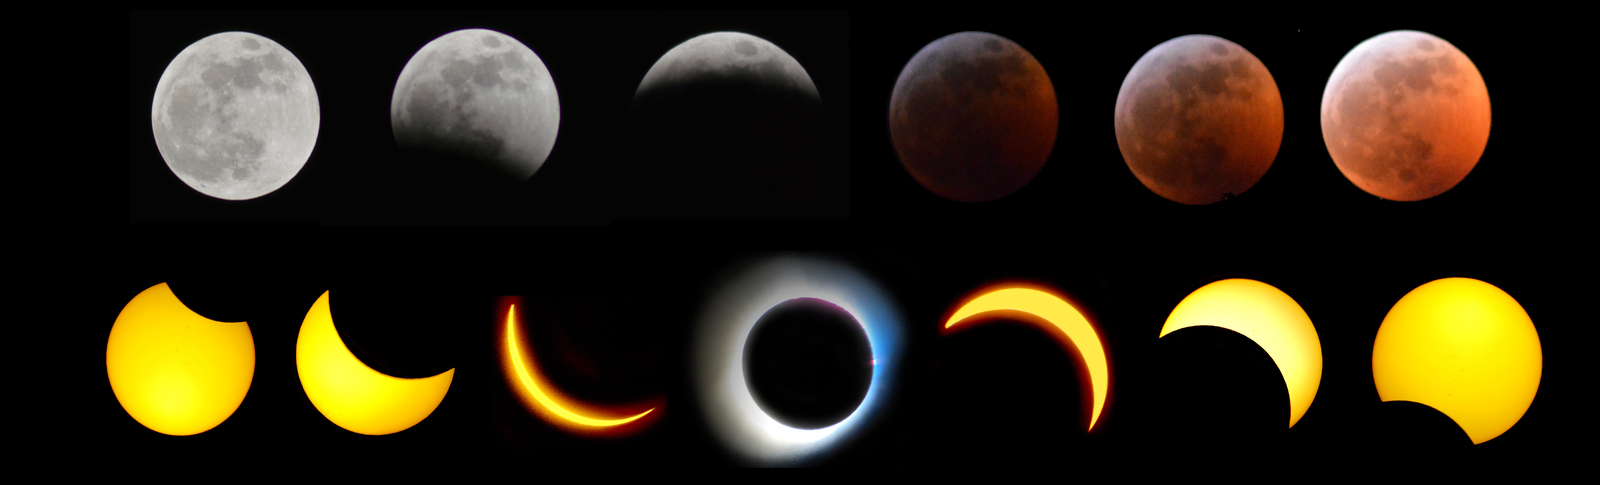 eclipses - lunar & solar.jpg